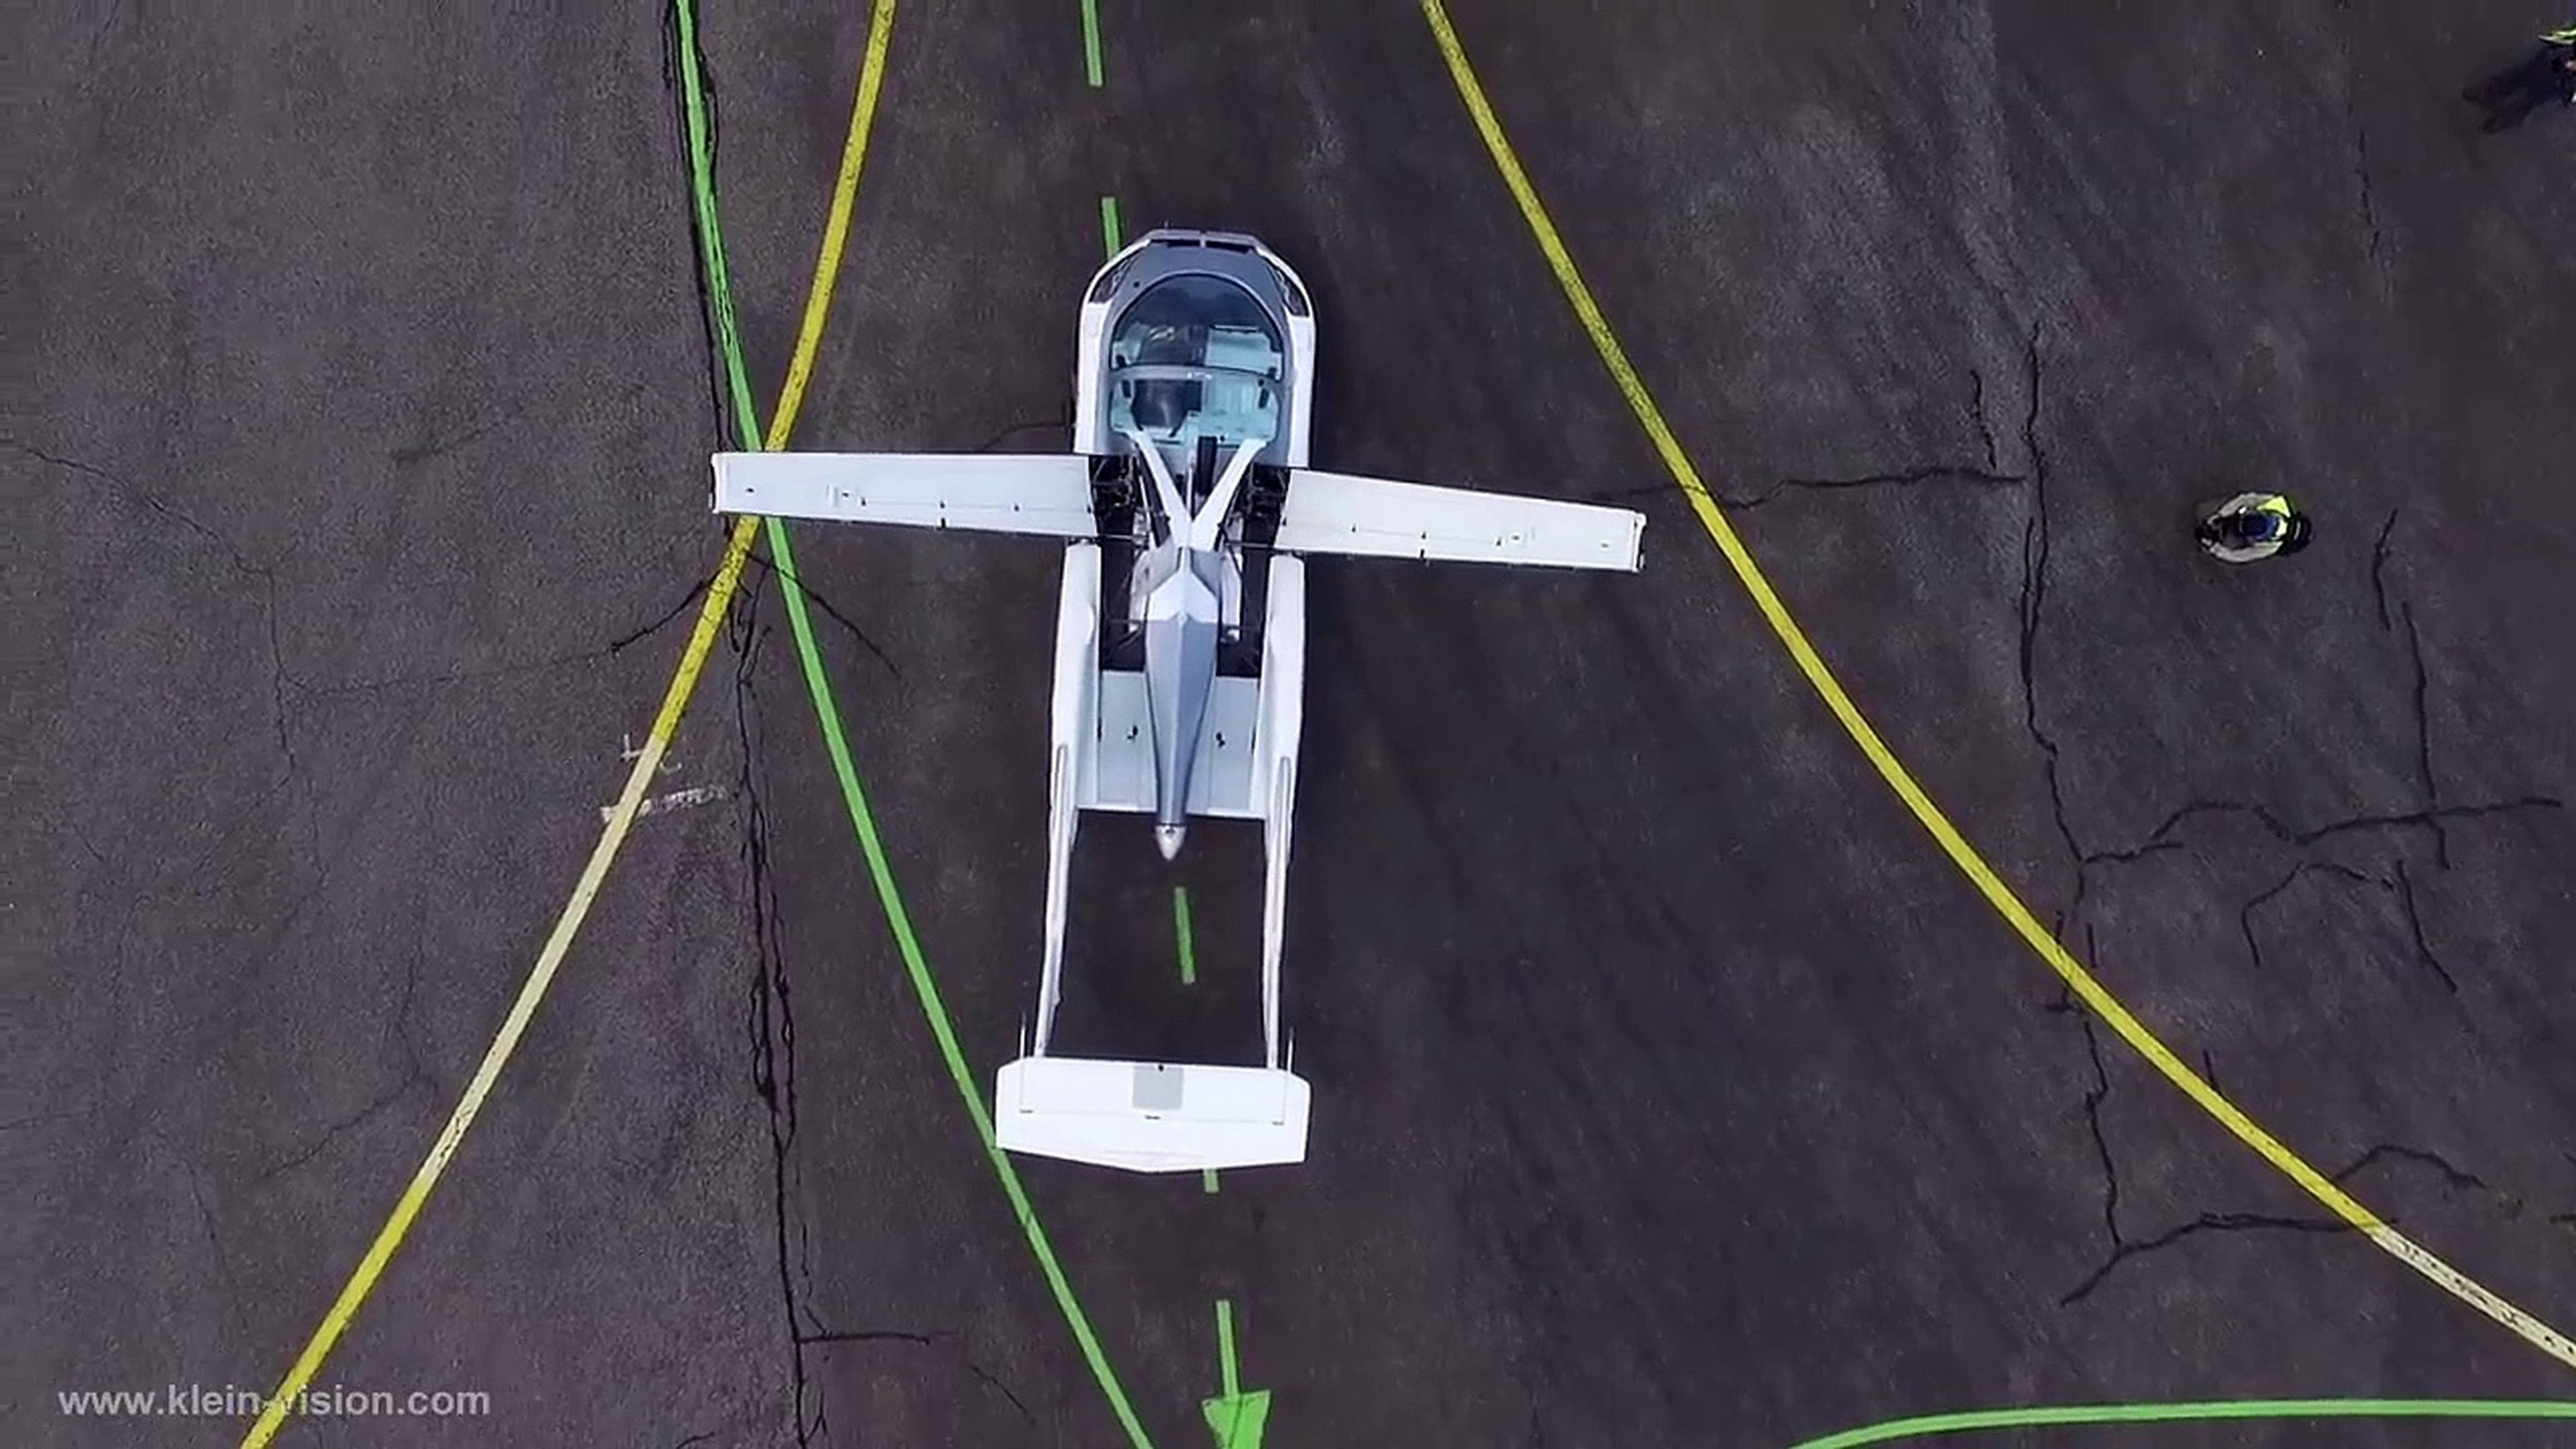 VÍDEO: ¡Por fin un coche volador que vuela de verdad! Se llama AIRCAR